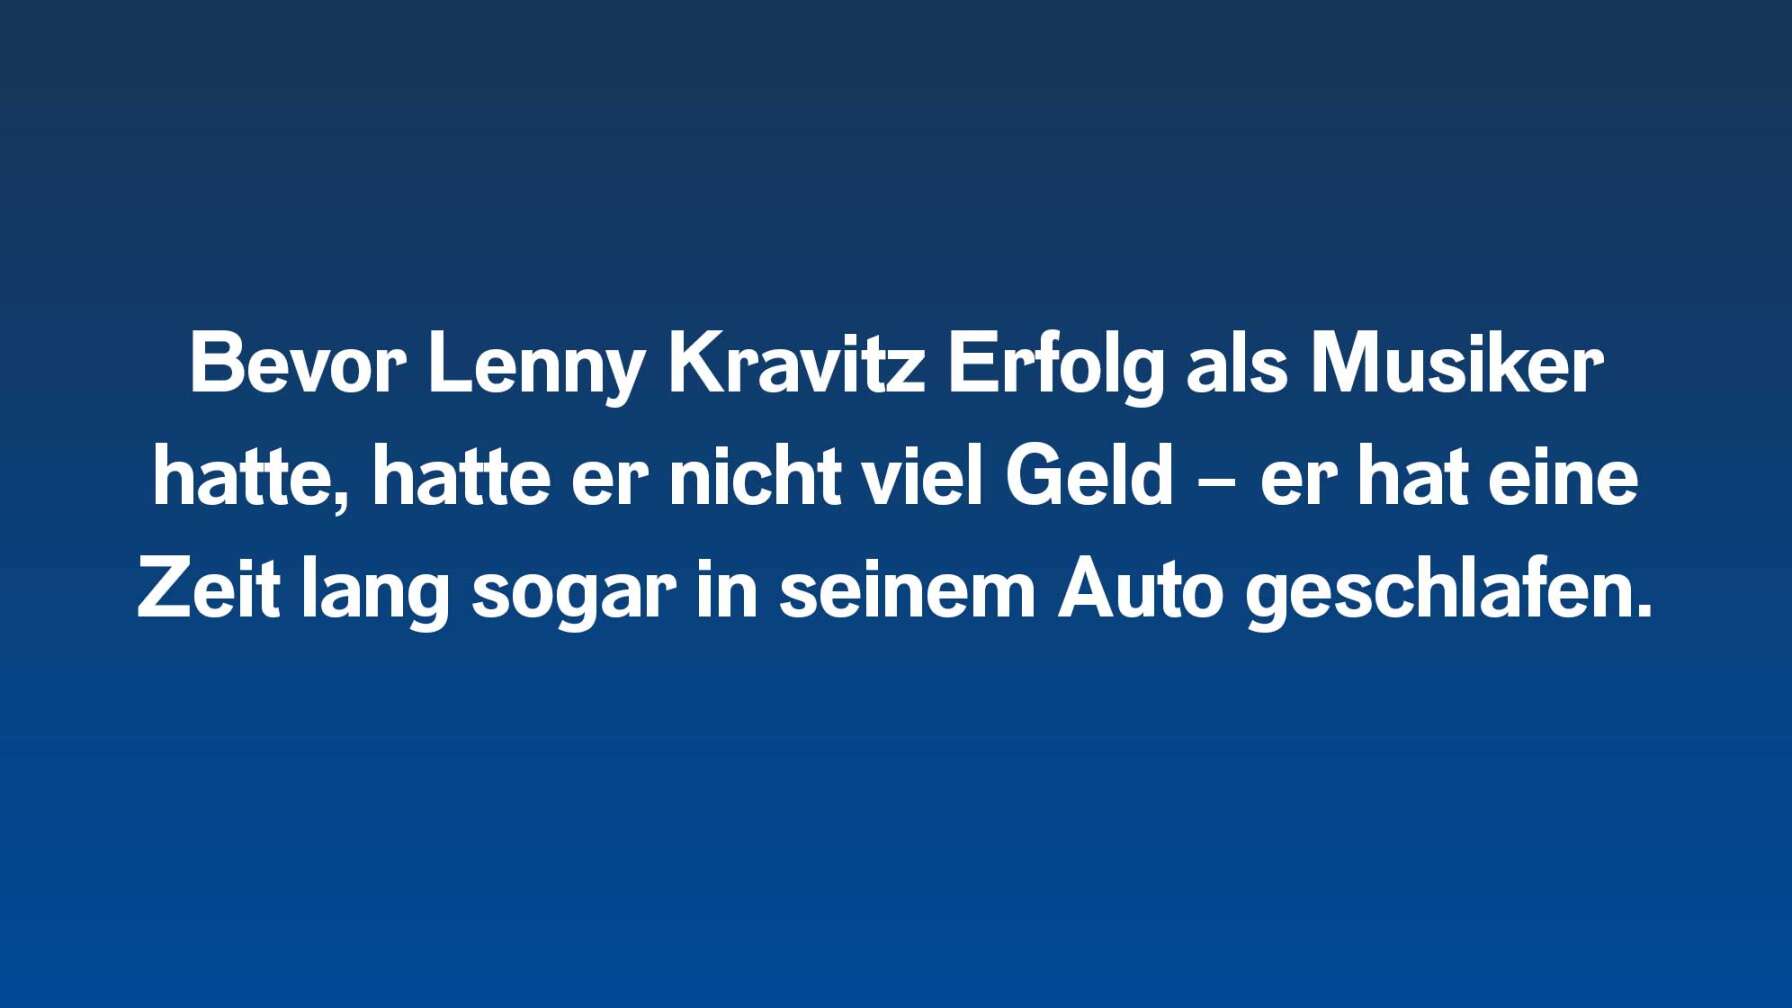 Bevor Lenny Kravitz Erfolg als Musiker hatte, hatte er nicht viel Geld – er hat eine Zeit lang sogar in seinem Auto geschlafen.